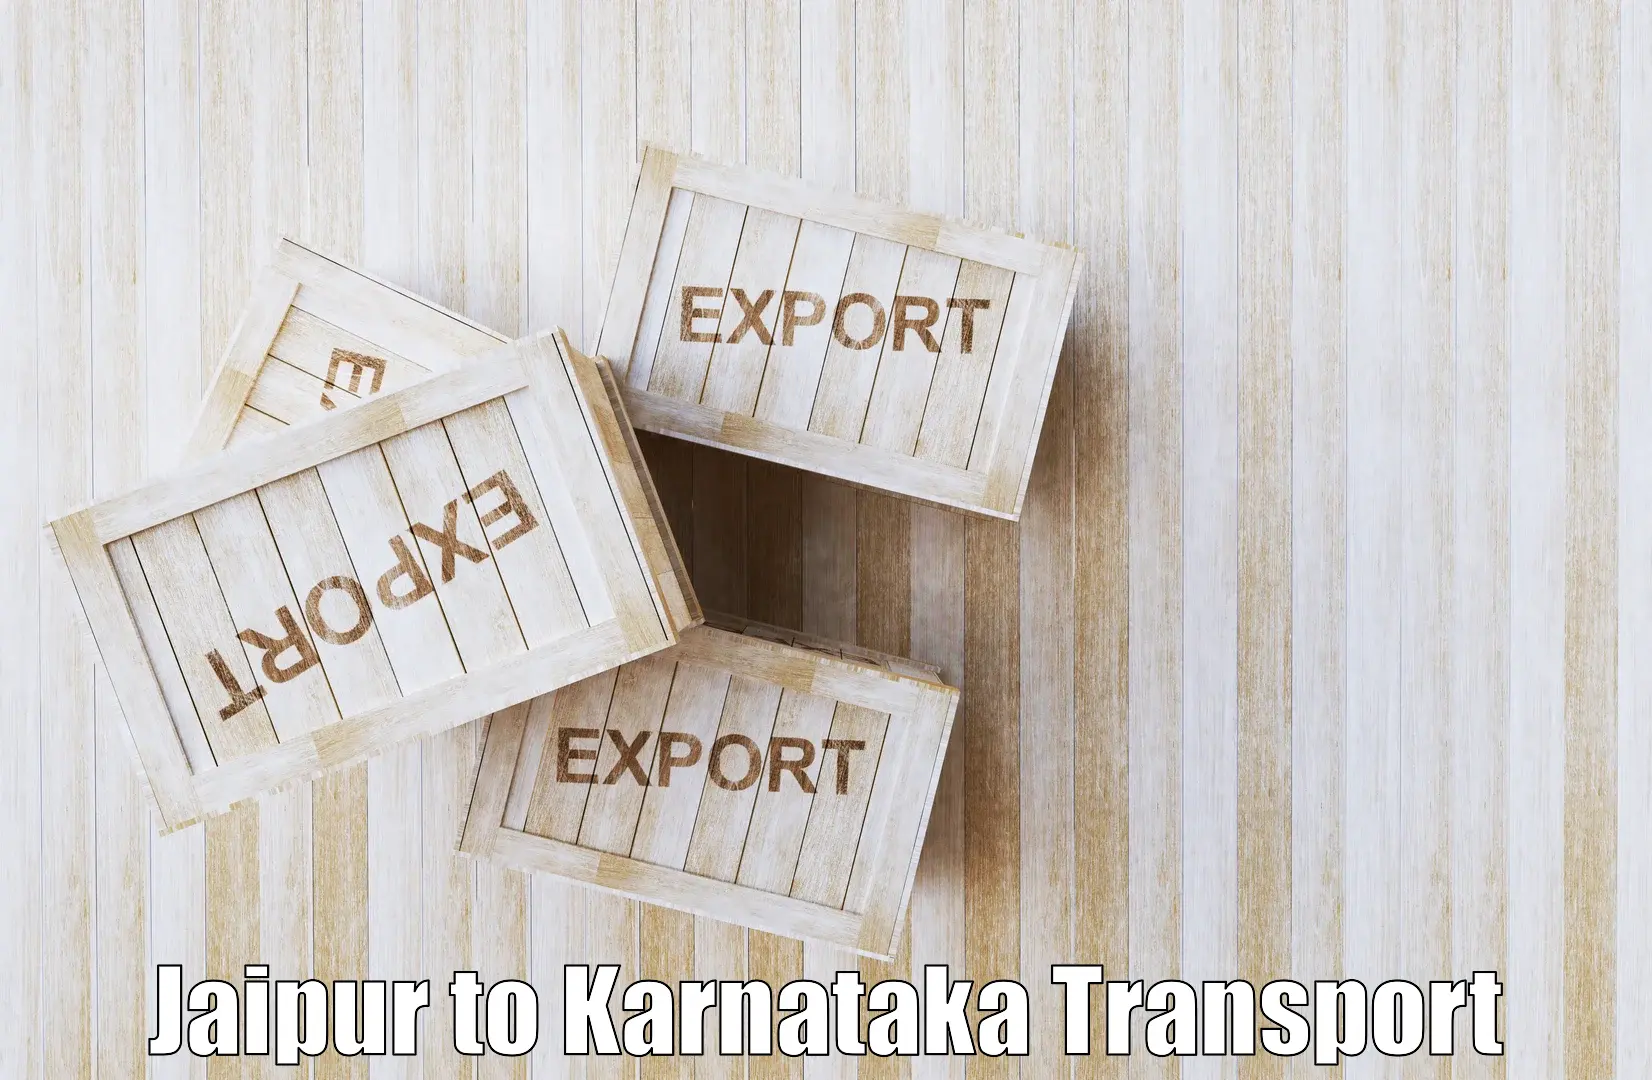 Road transport online services Jaipur to Hosadurga